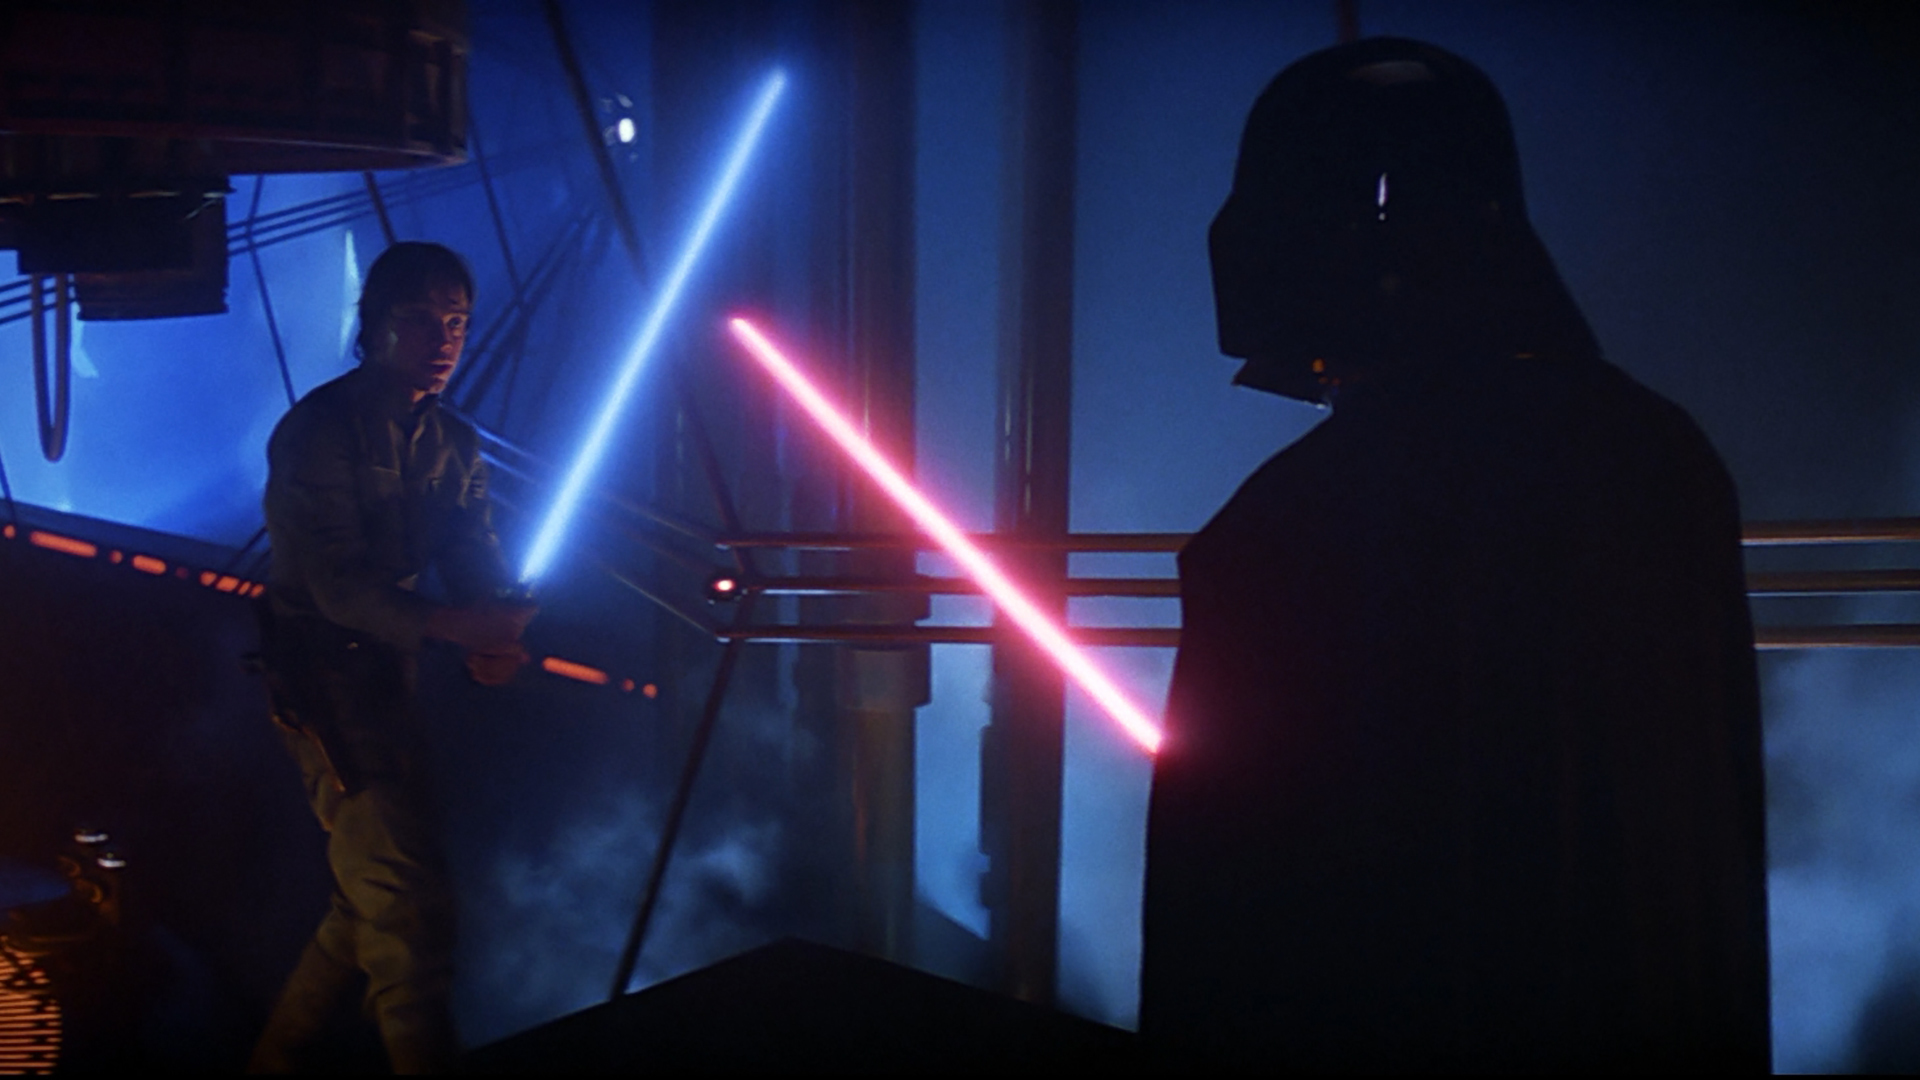 Luke-Anakin-Skywalker-Darth-Vader-Fuerza-Star-Wars